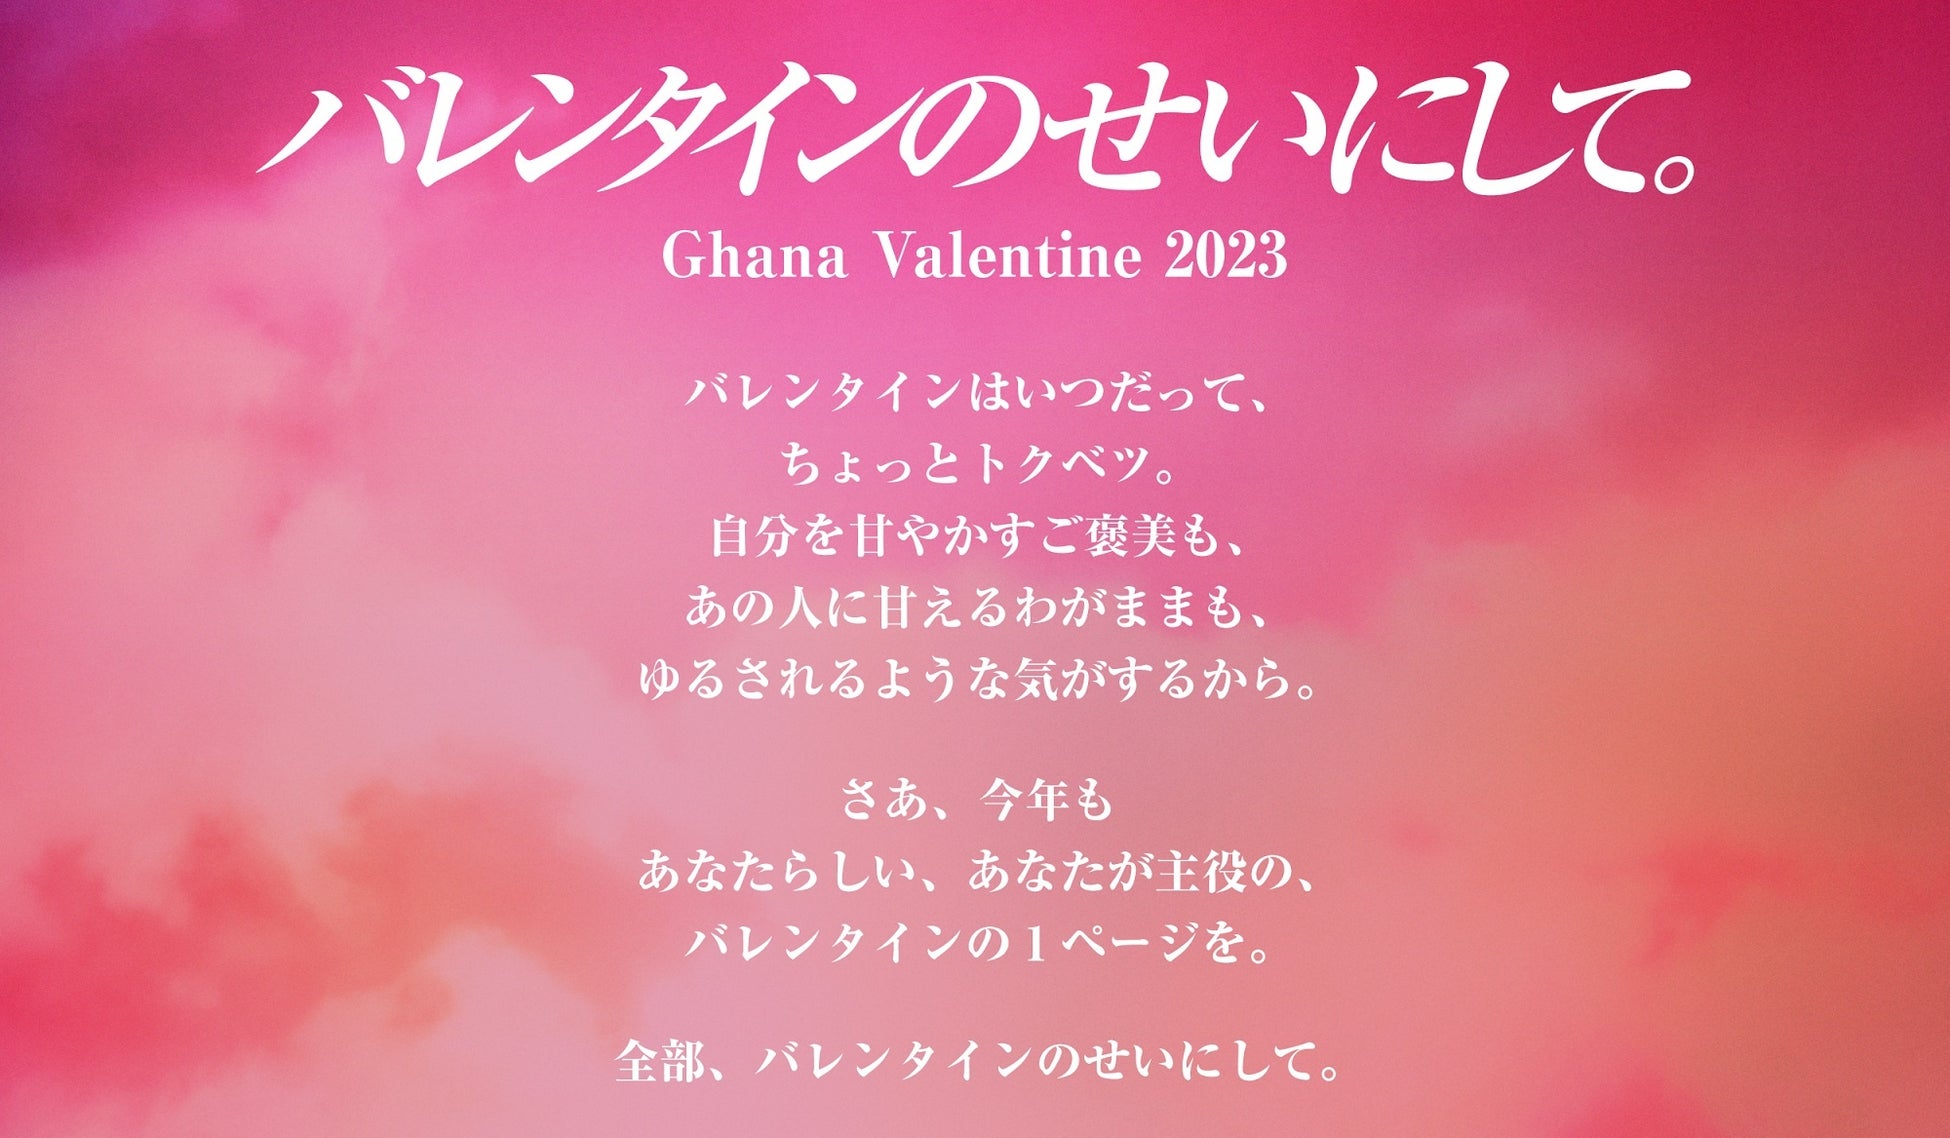 「バレンタインのせいにして。」今年のバレンタインは、昨年に引き続き日本中の皆さんが思い思いにバレンタインを楽しむ世の中になるように、という想いを込めてガーナからのメッセージを発信します。のサブ画像1